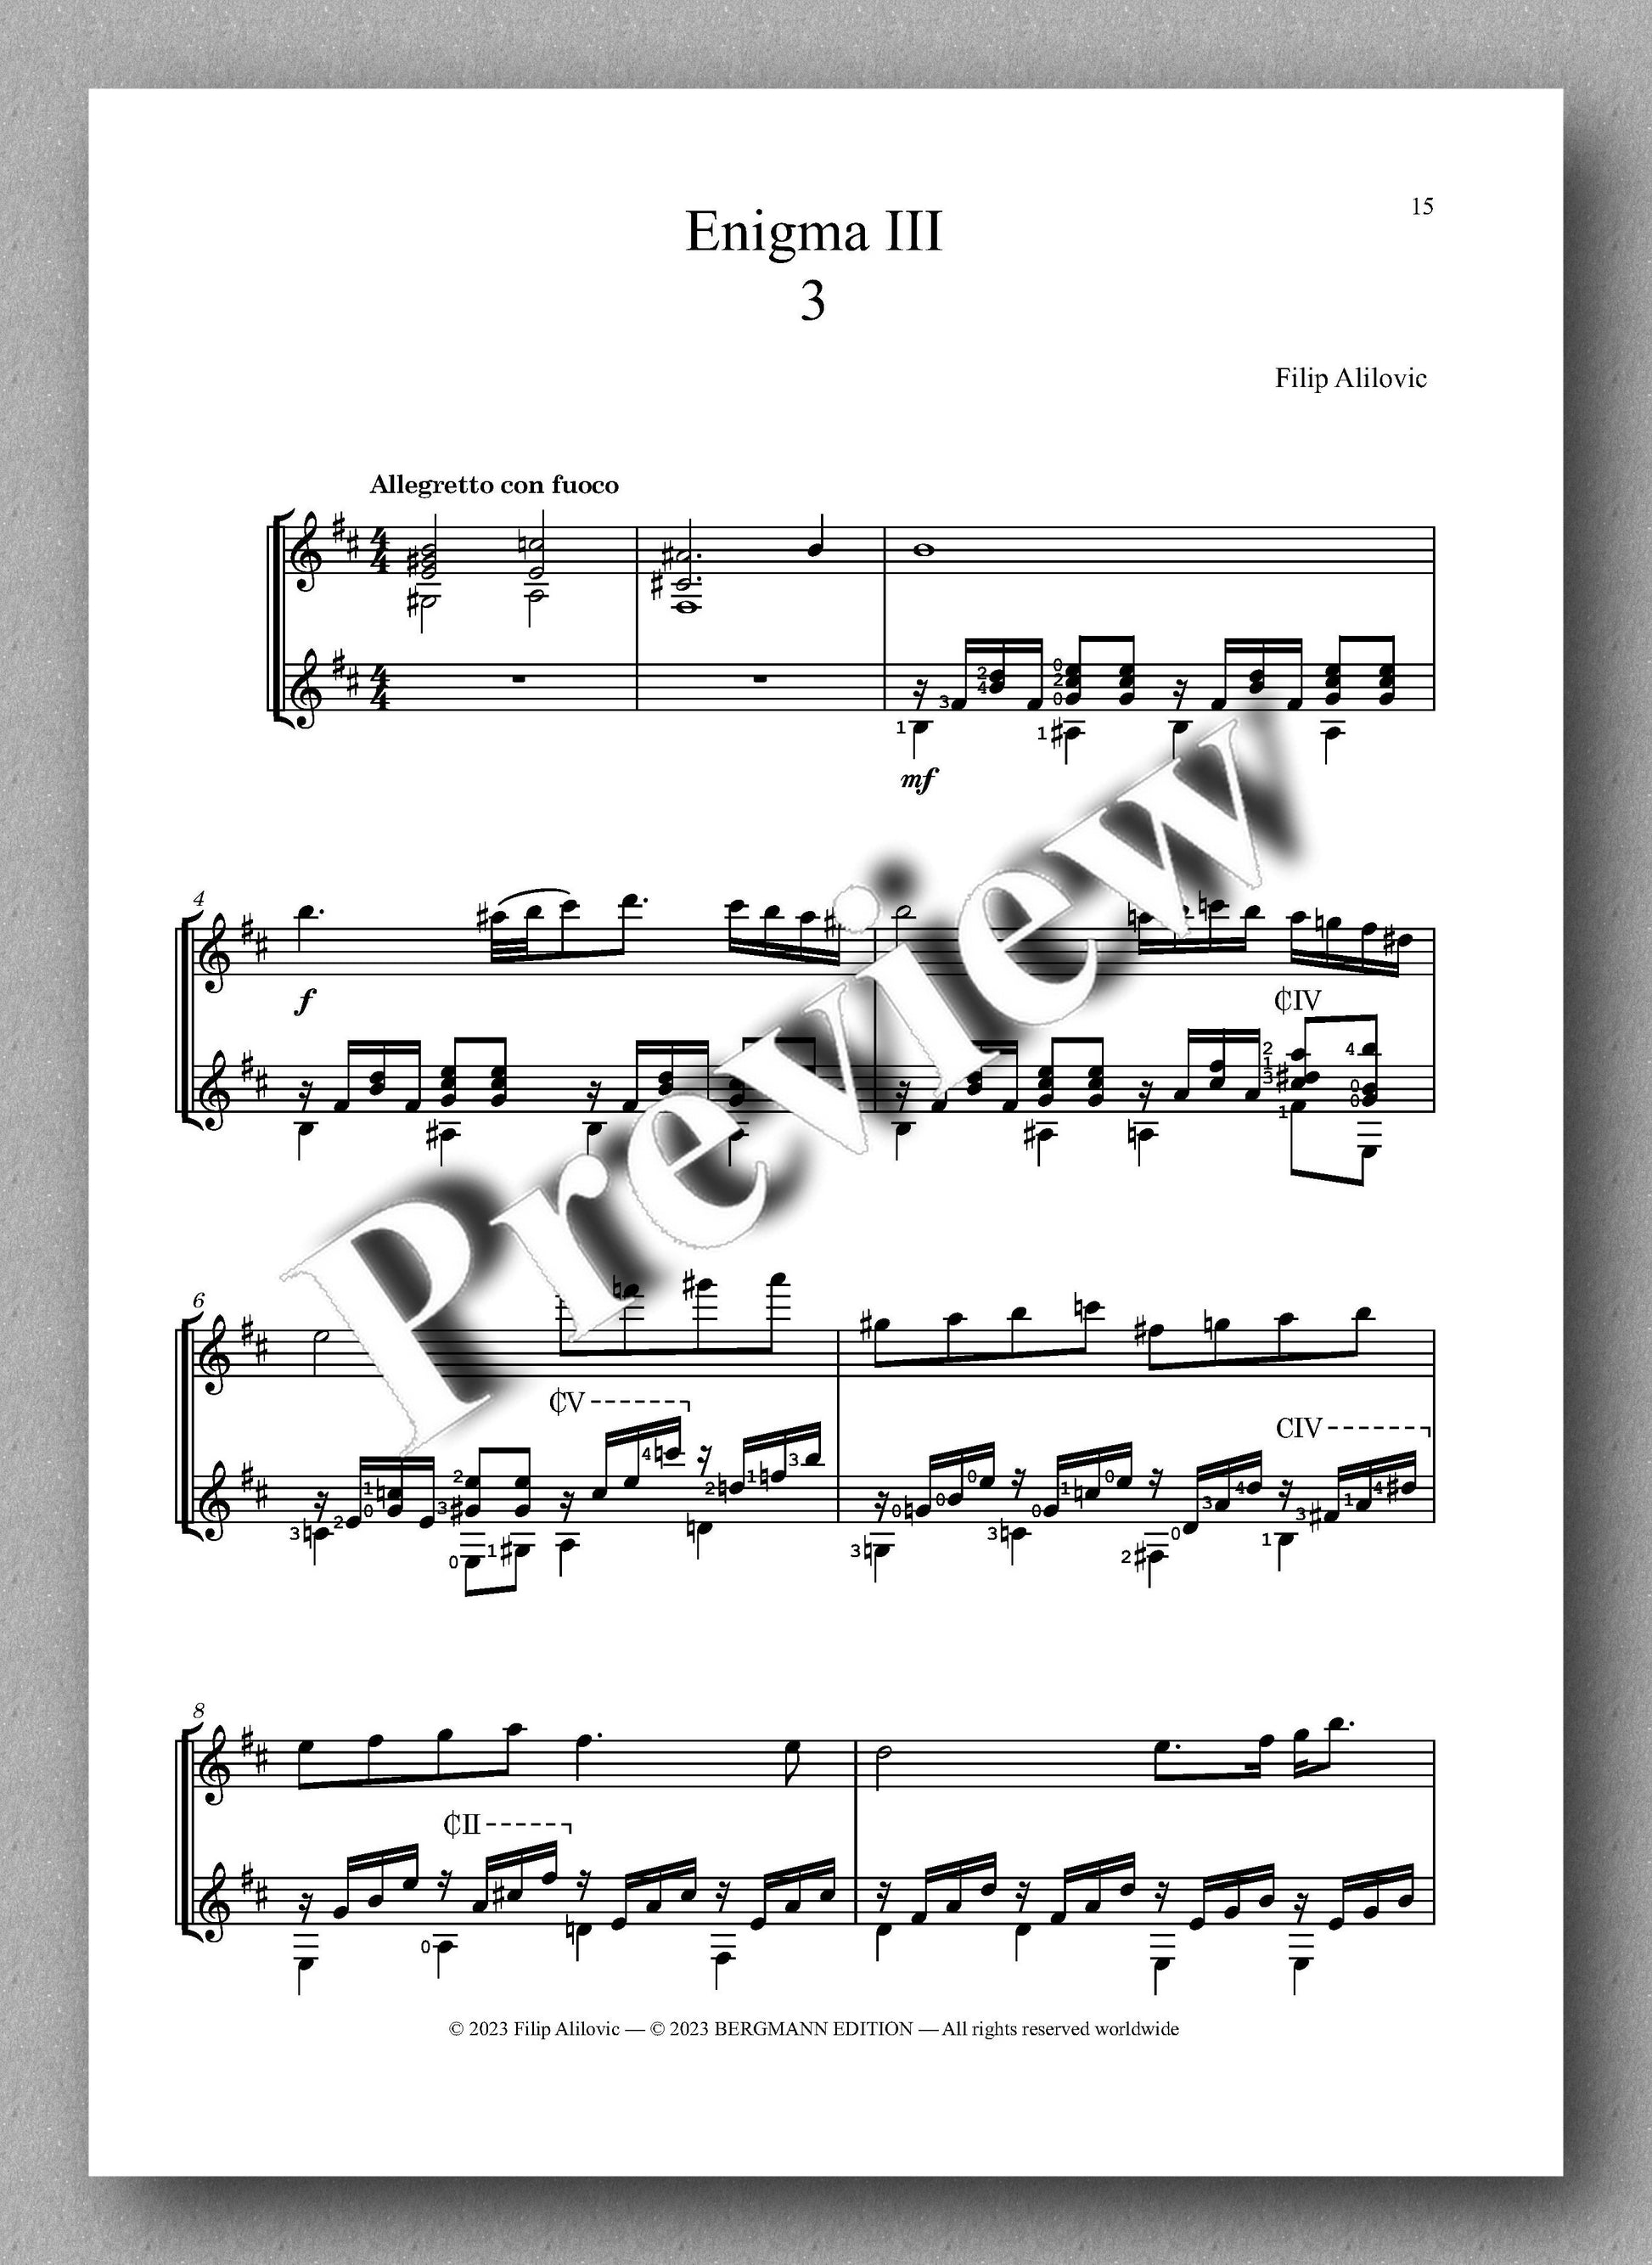 Filip Alilovic, Enigma III - preview of the music score 3